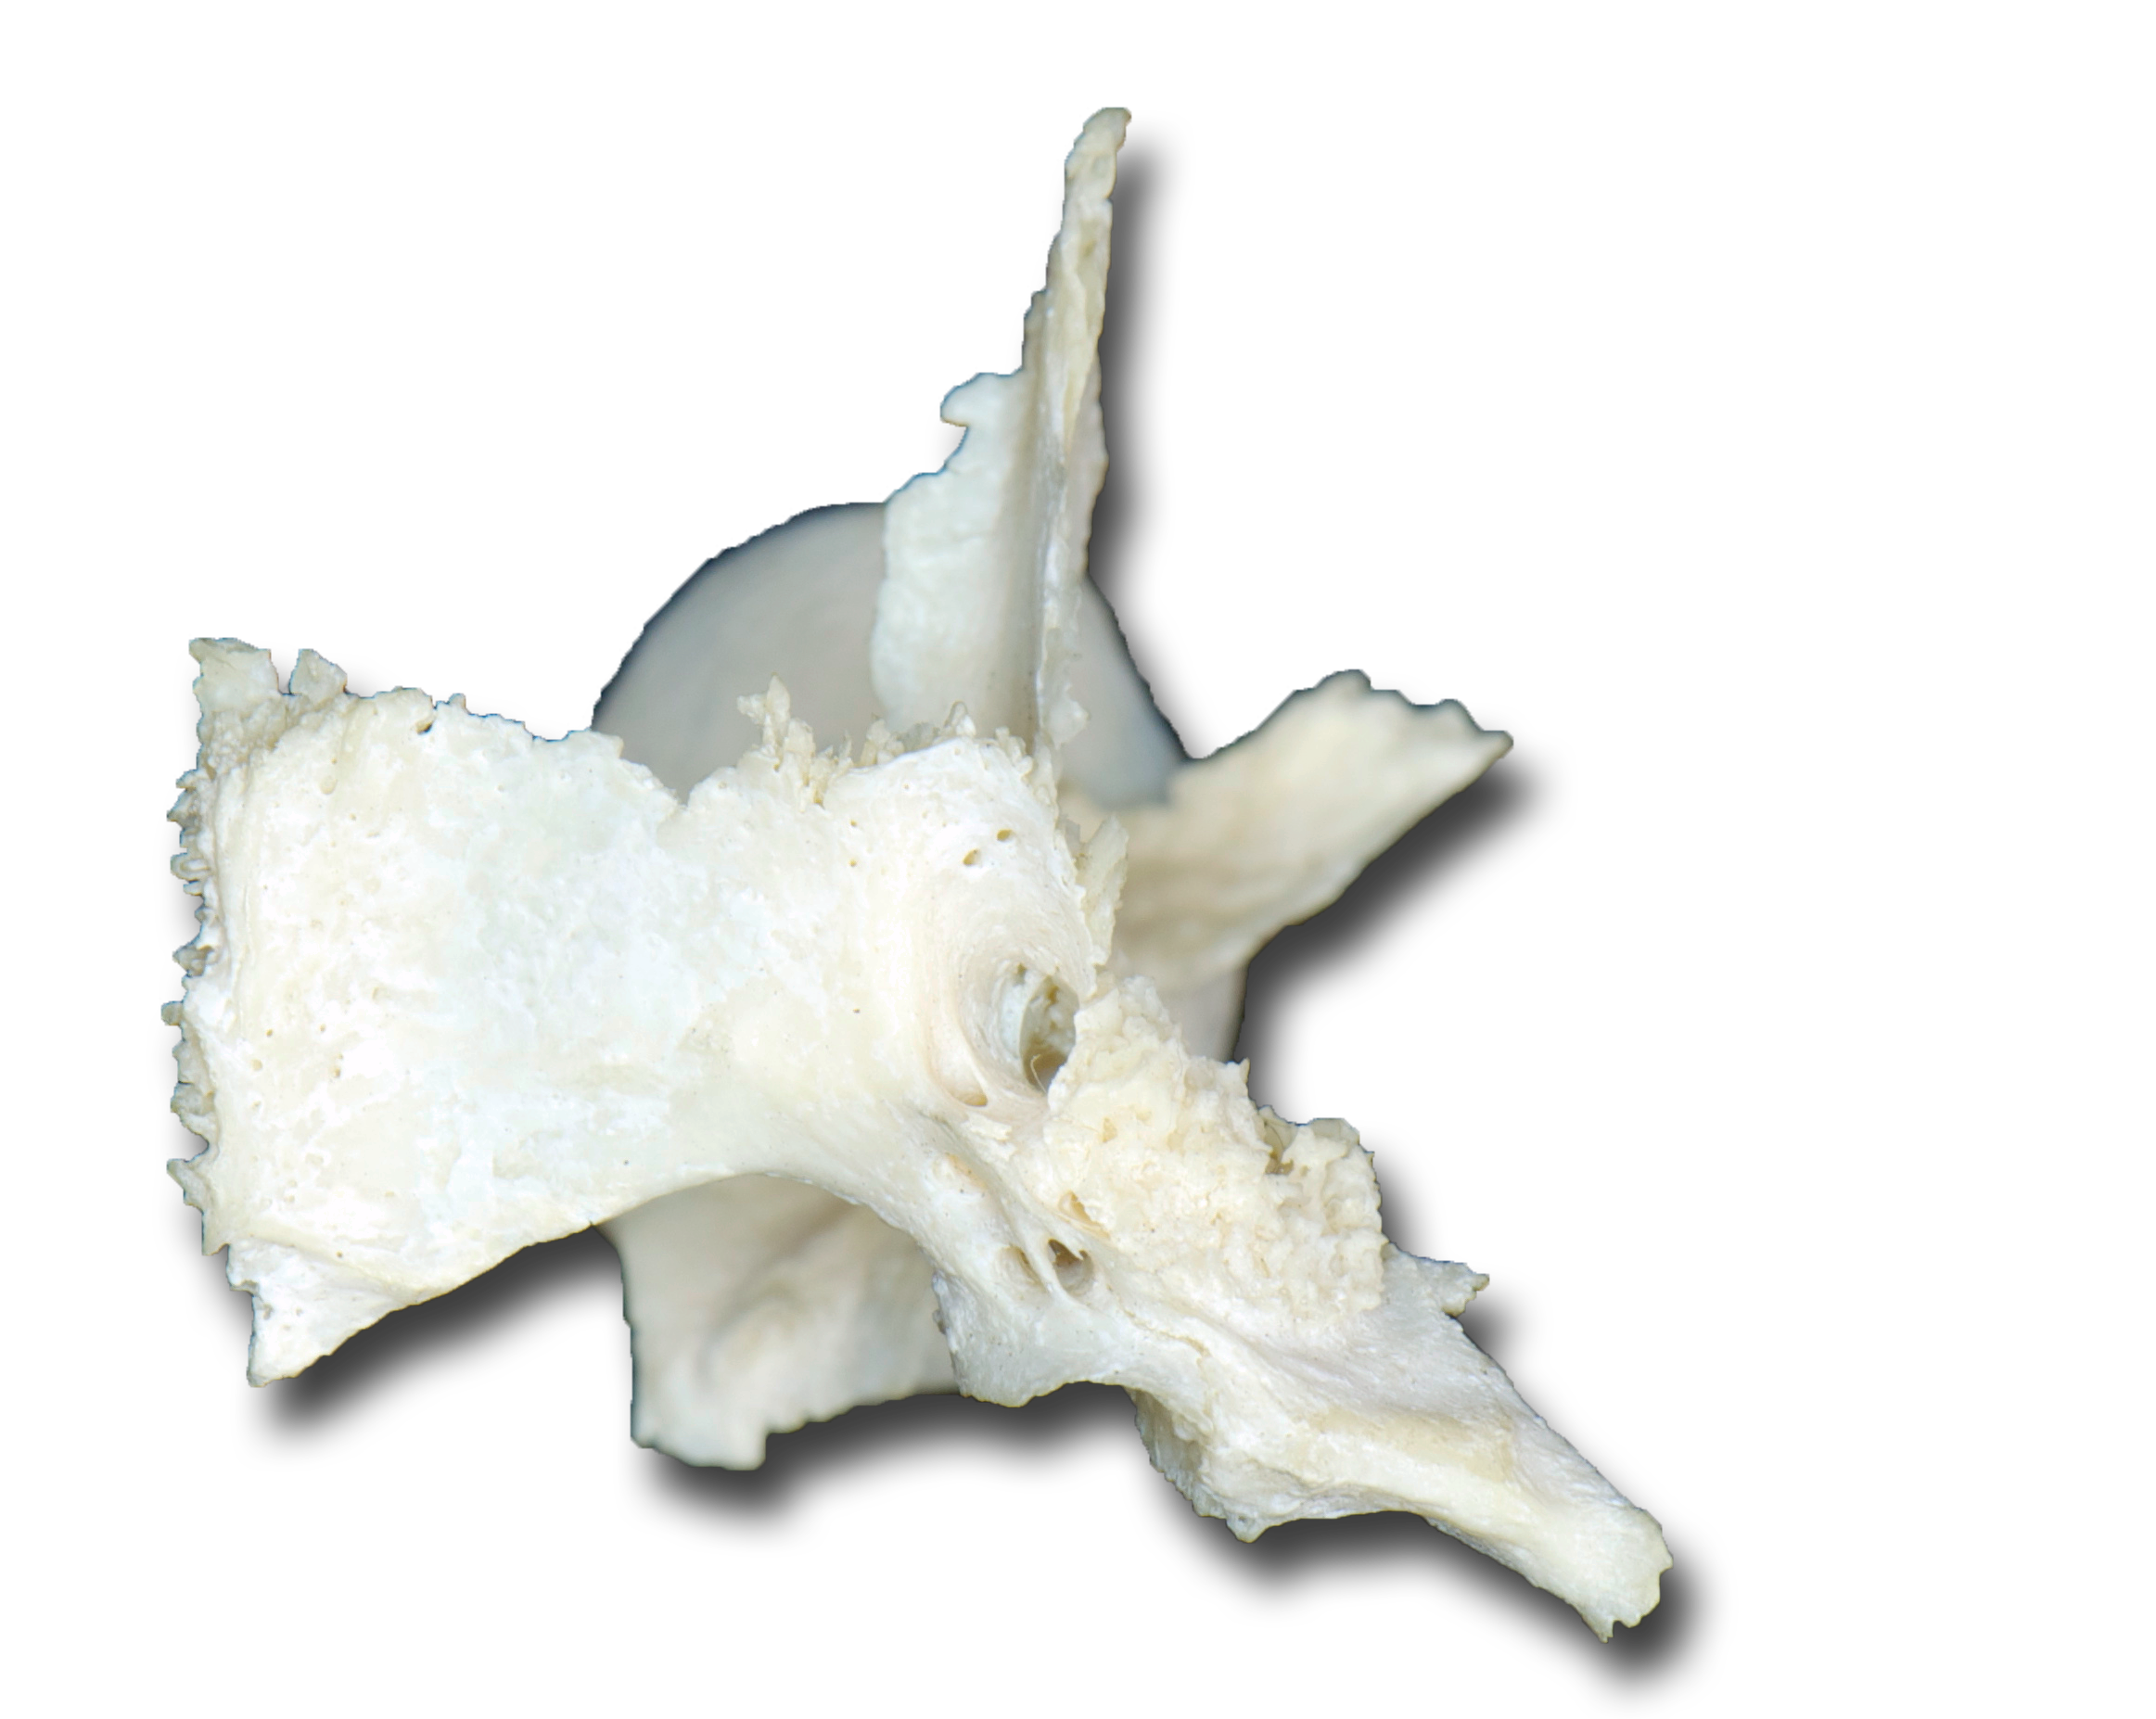 Palatine Bone - Inferior View